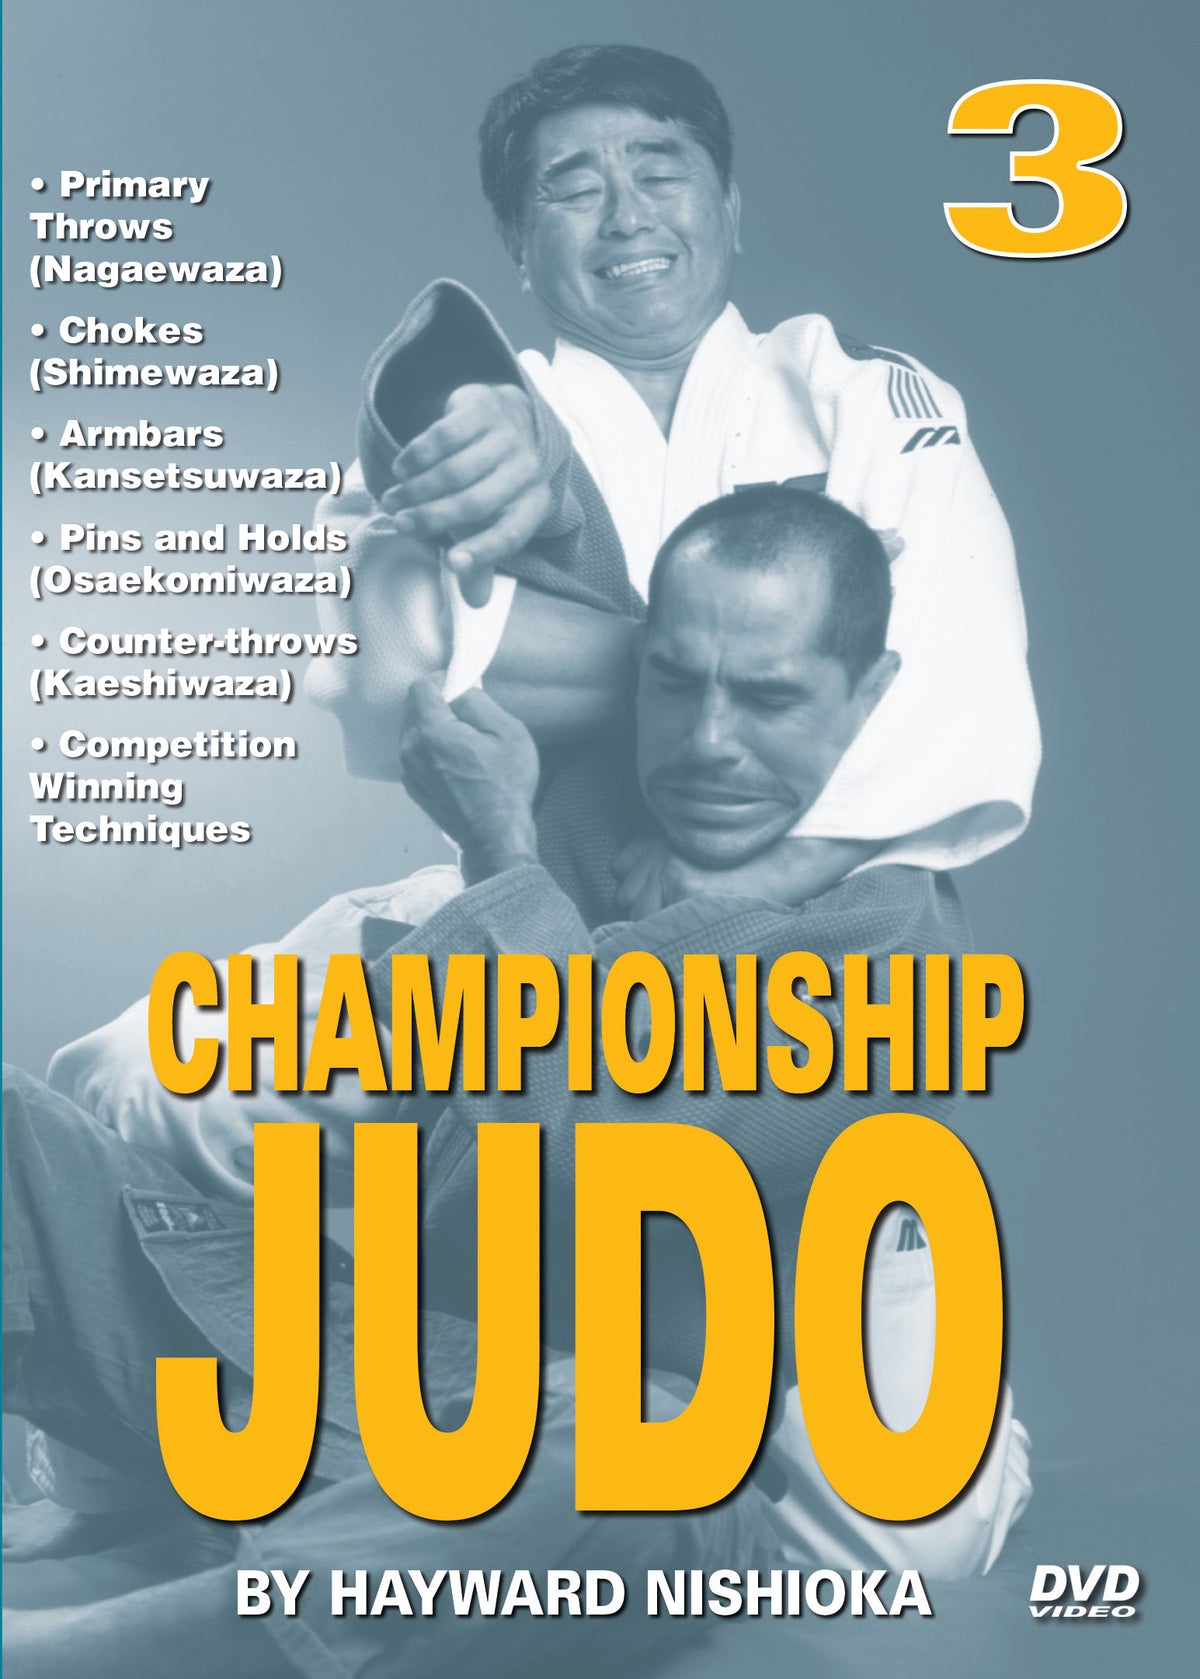 Championship Kodokan Judo #3 DVD Hayward Nishioka armbars pins counter throws